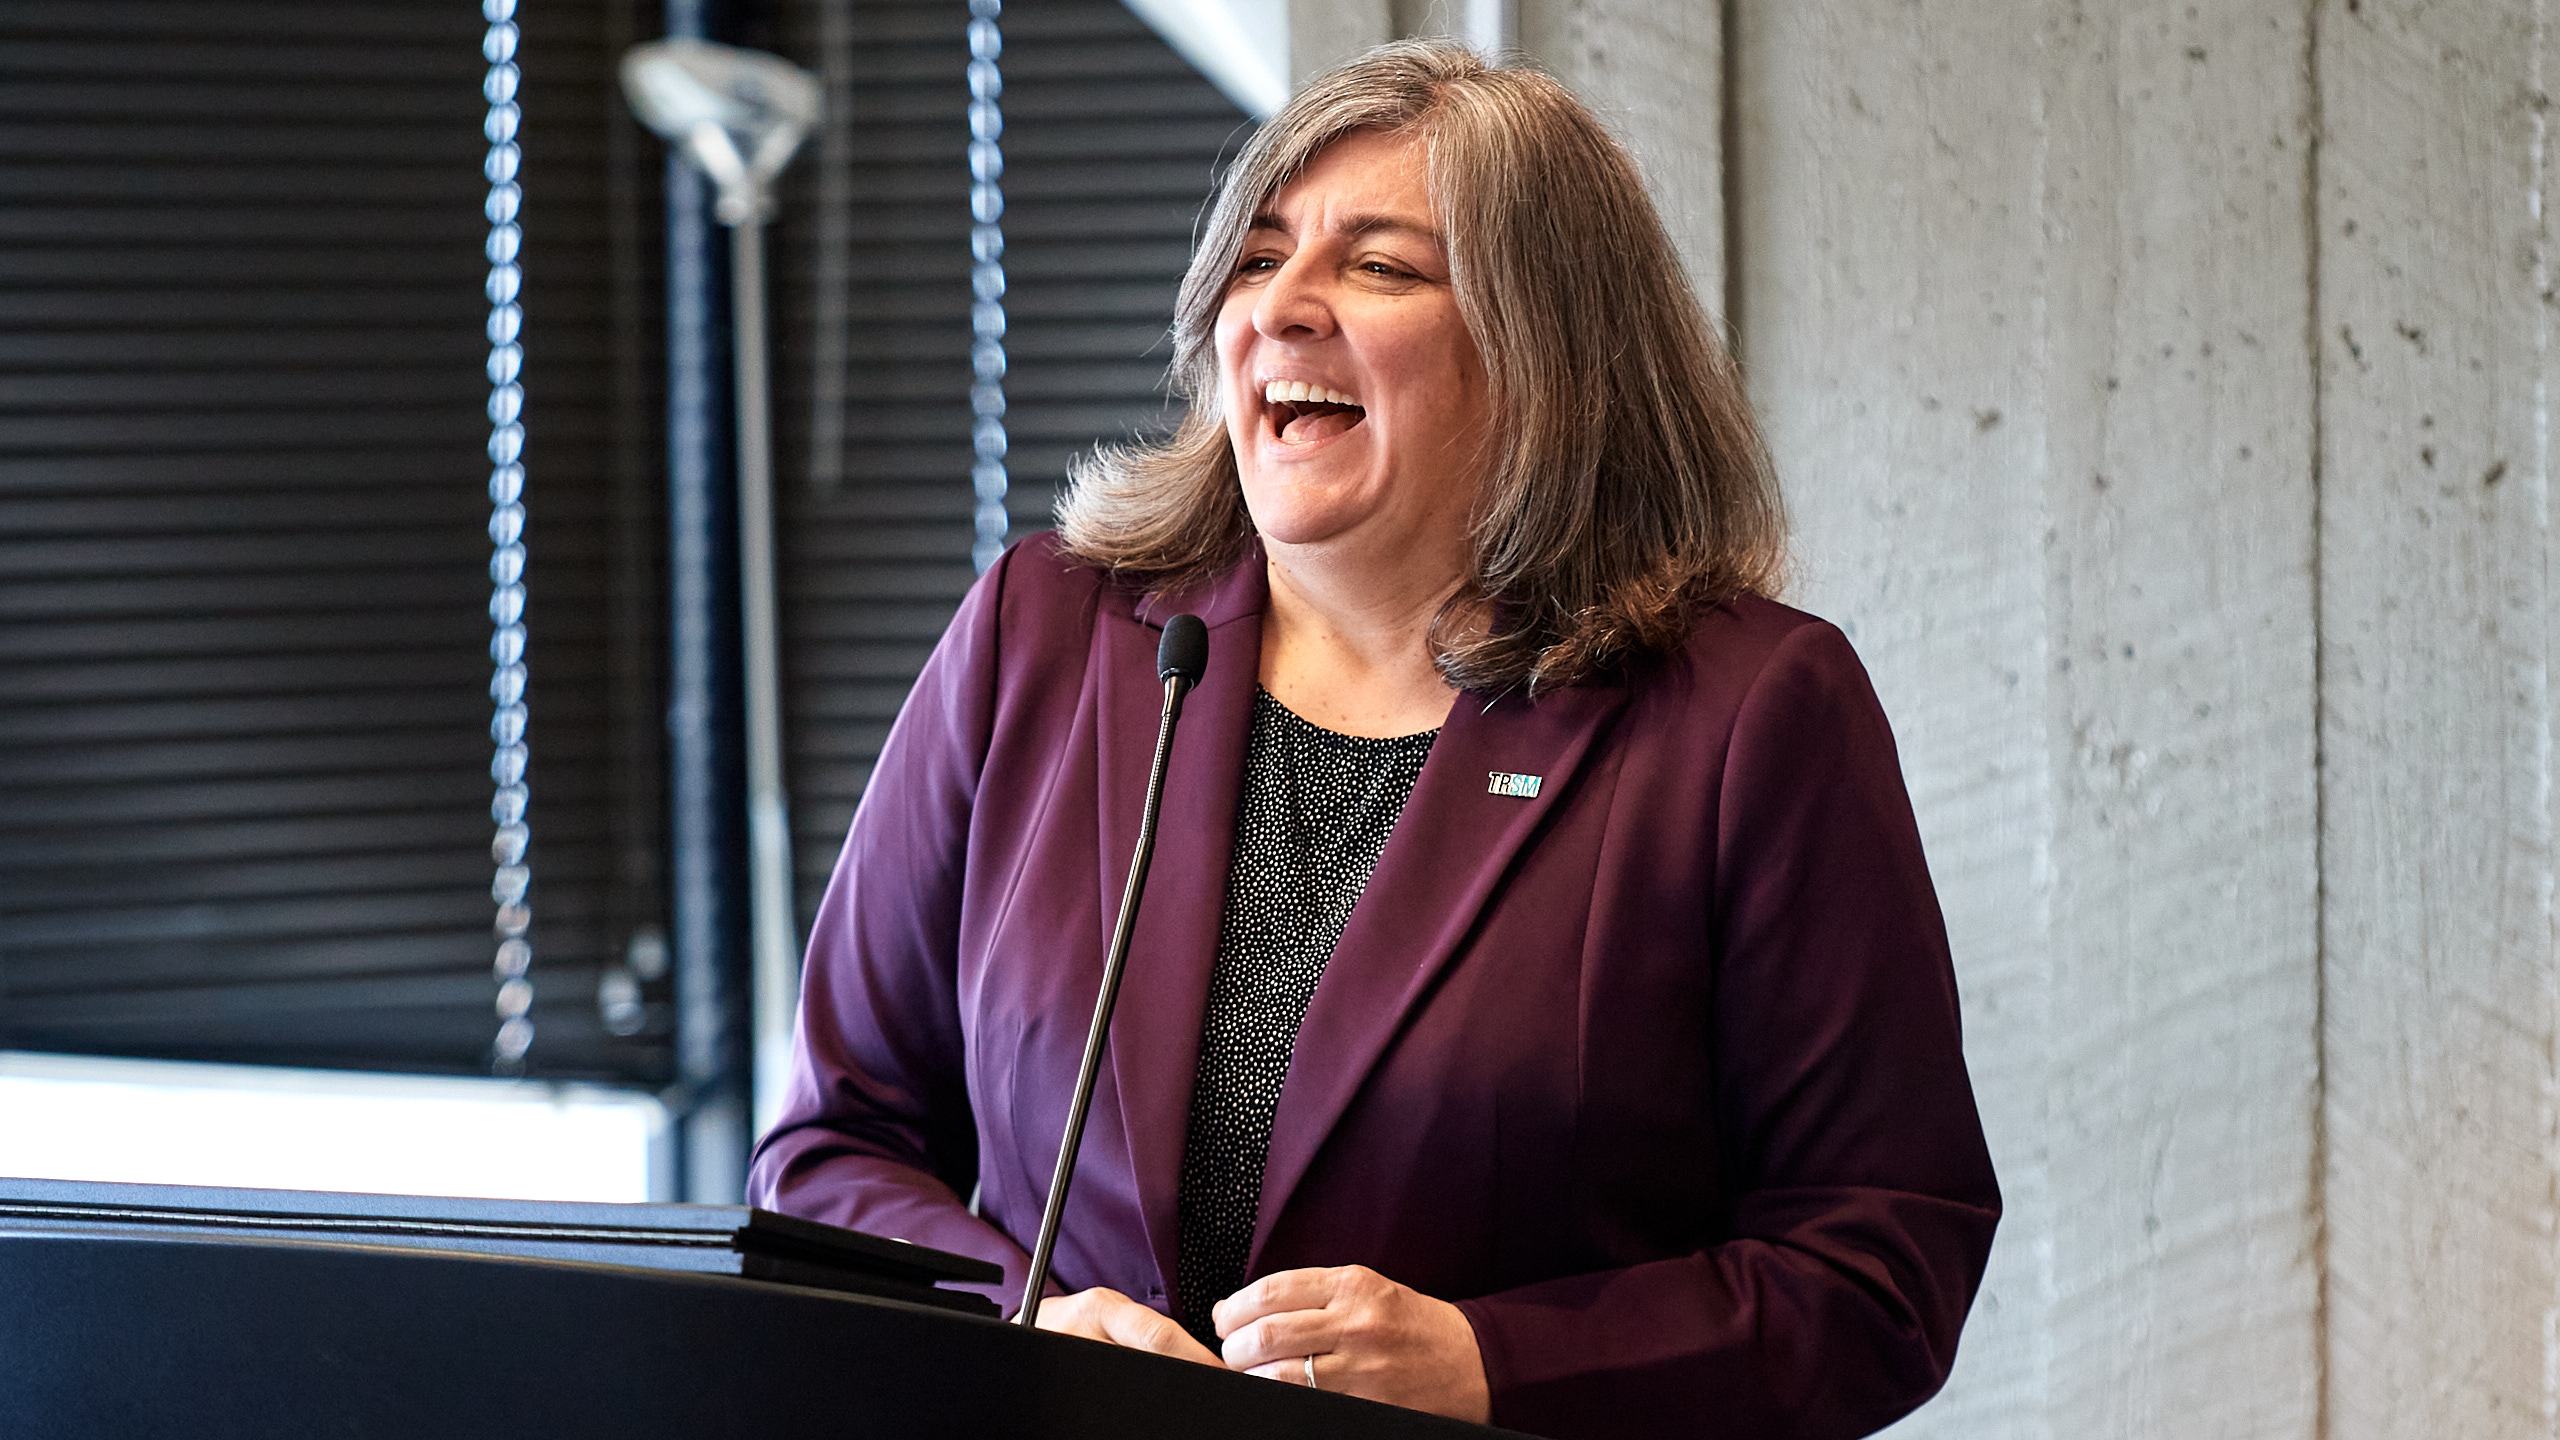 Woman laughing while standing at podium, wearing purple blazer